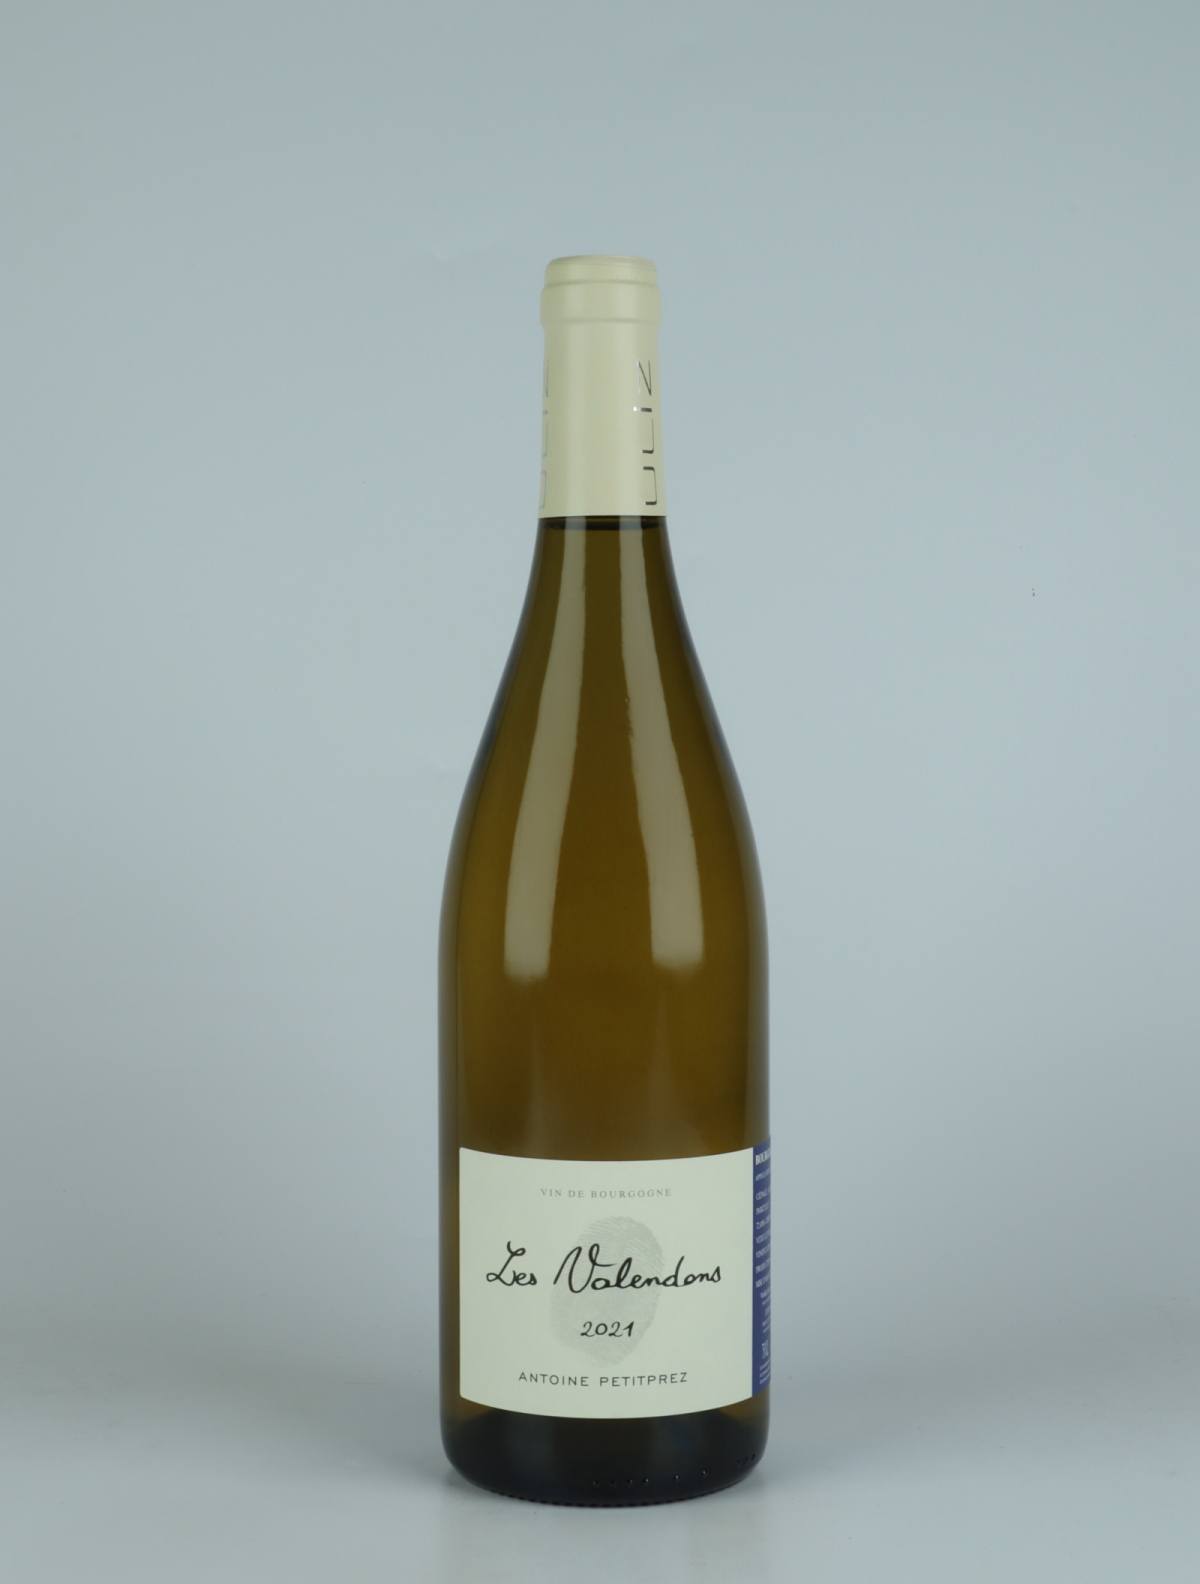 A bottle 2021 Bourgogne Aligoté - Les Valendons White wine from Antoine Petitprez, Burgundy in France